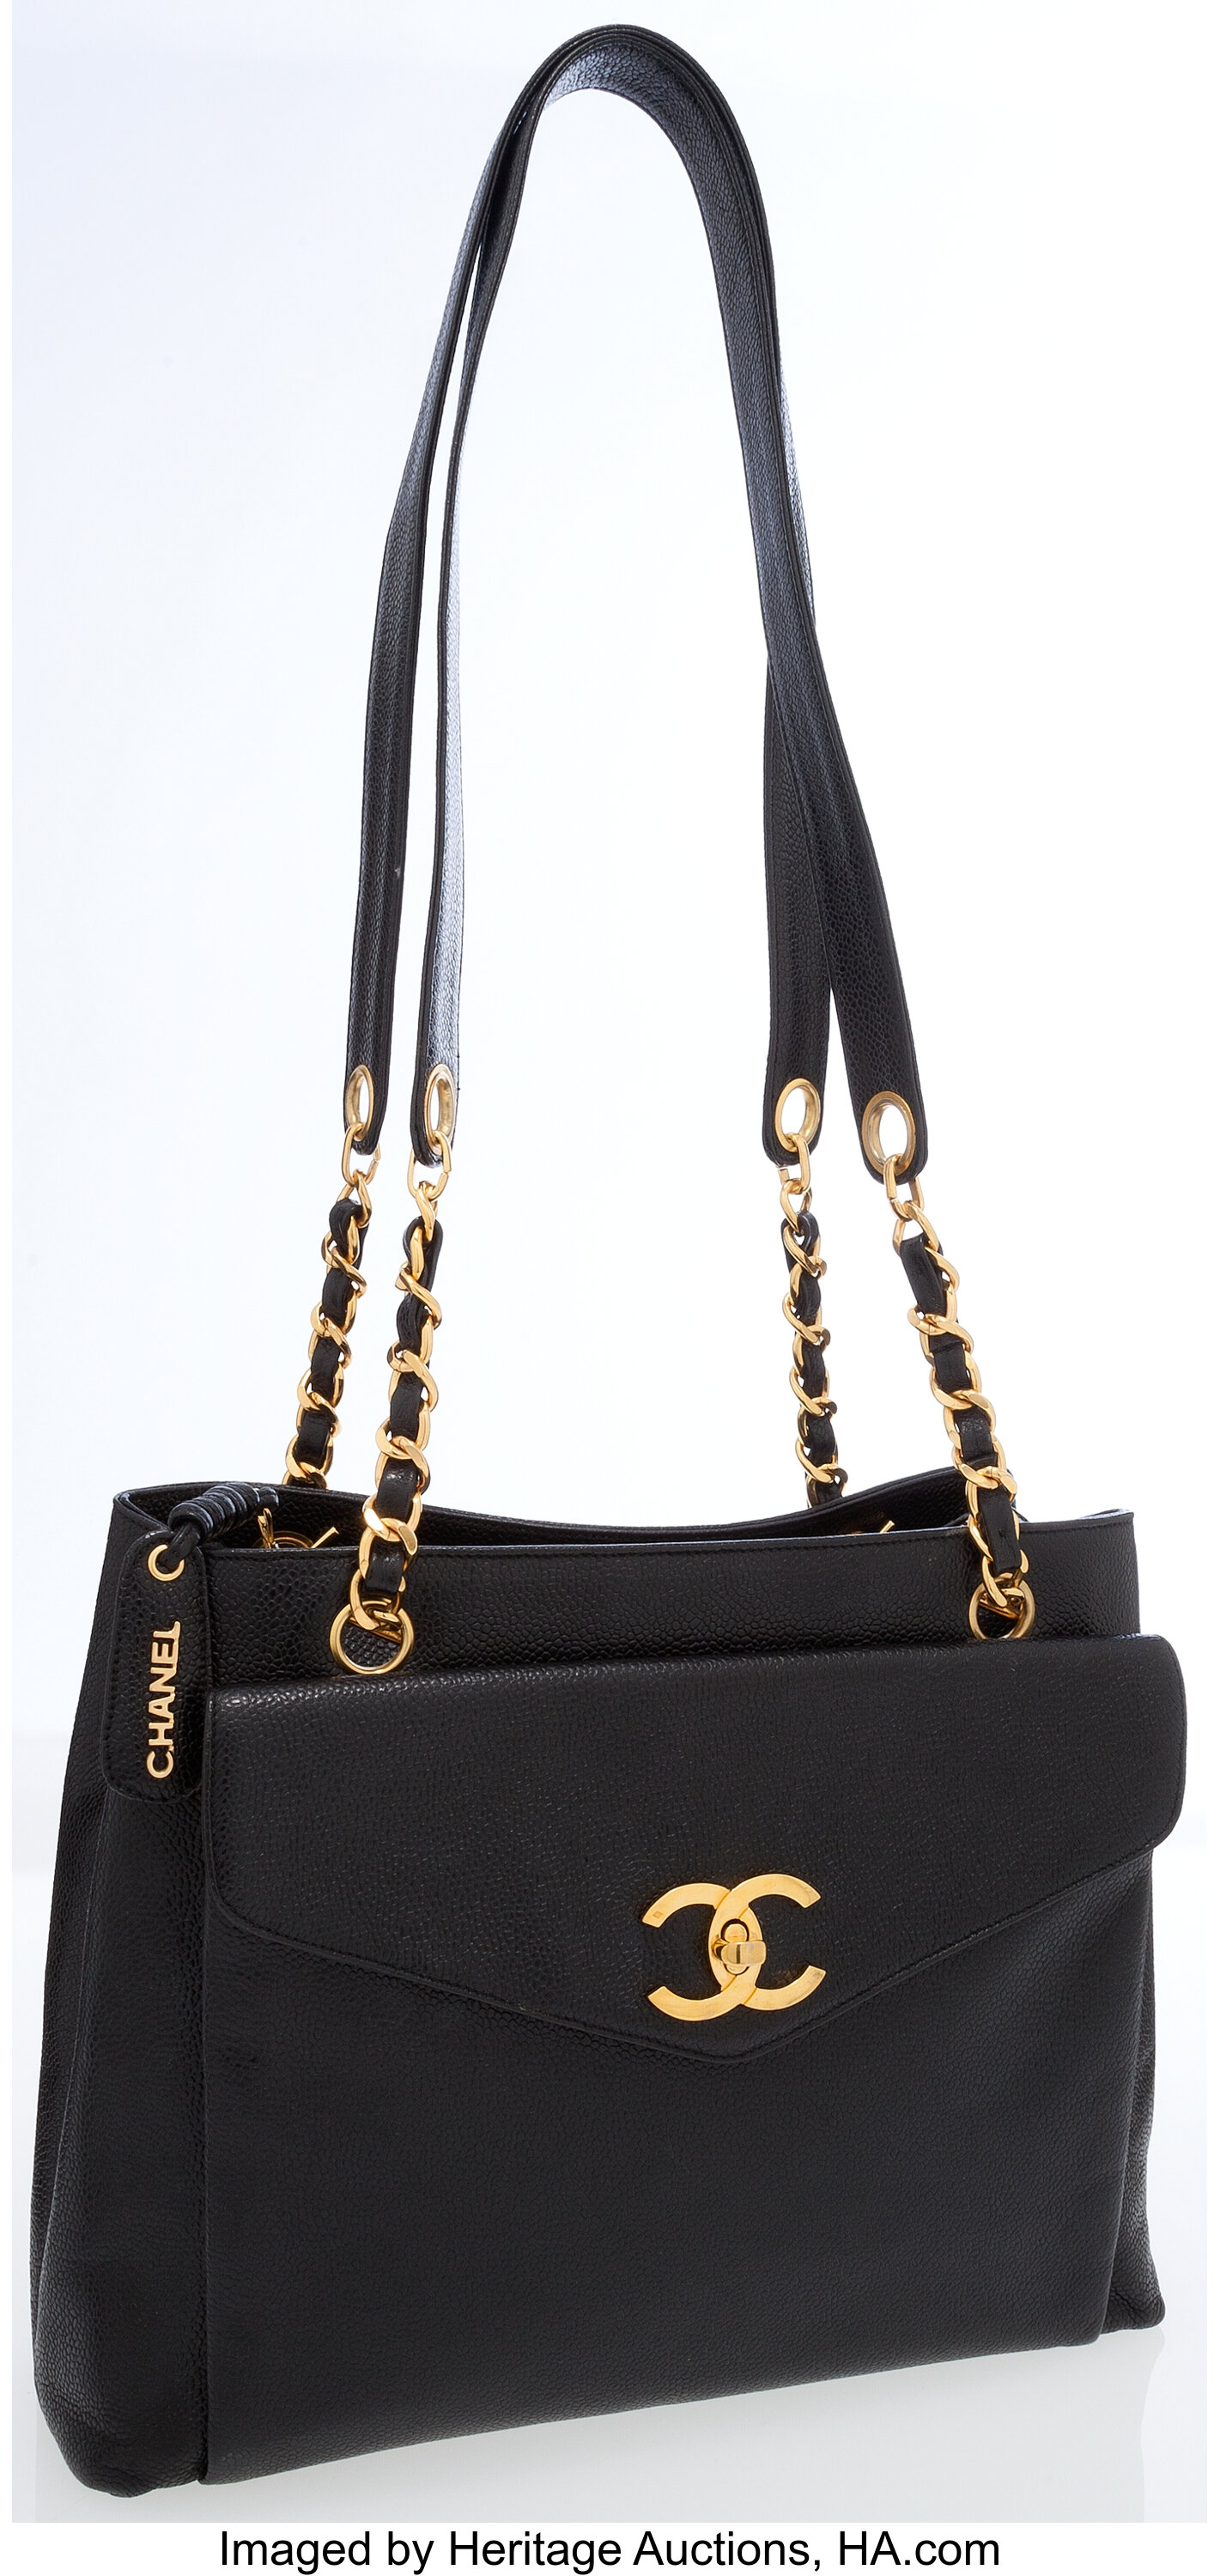 Chanel Black Caviar Leather Turnlock Pocket Shoulder Bag with Gold